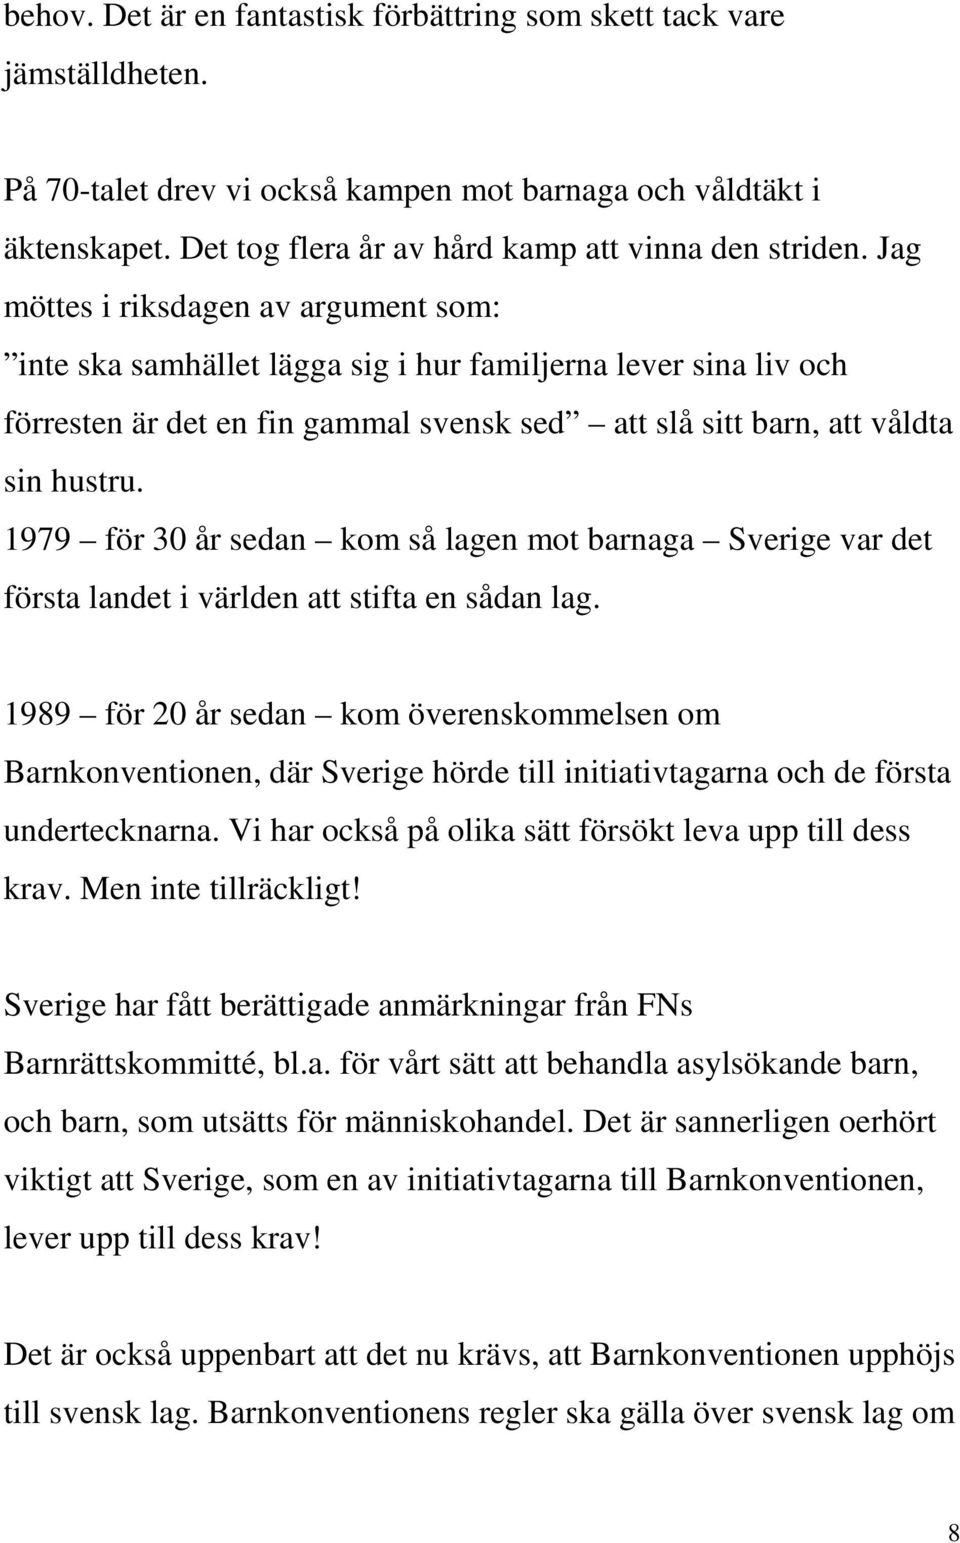 Jag möttes i riksdagen av argument som: inte ska samhället lägga sig i hur familjerna lever sina liv och förresten är det en fin gammal svensk sed att slå sitt barn, att våldta sin hustru.